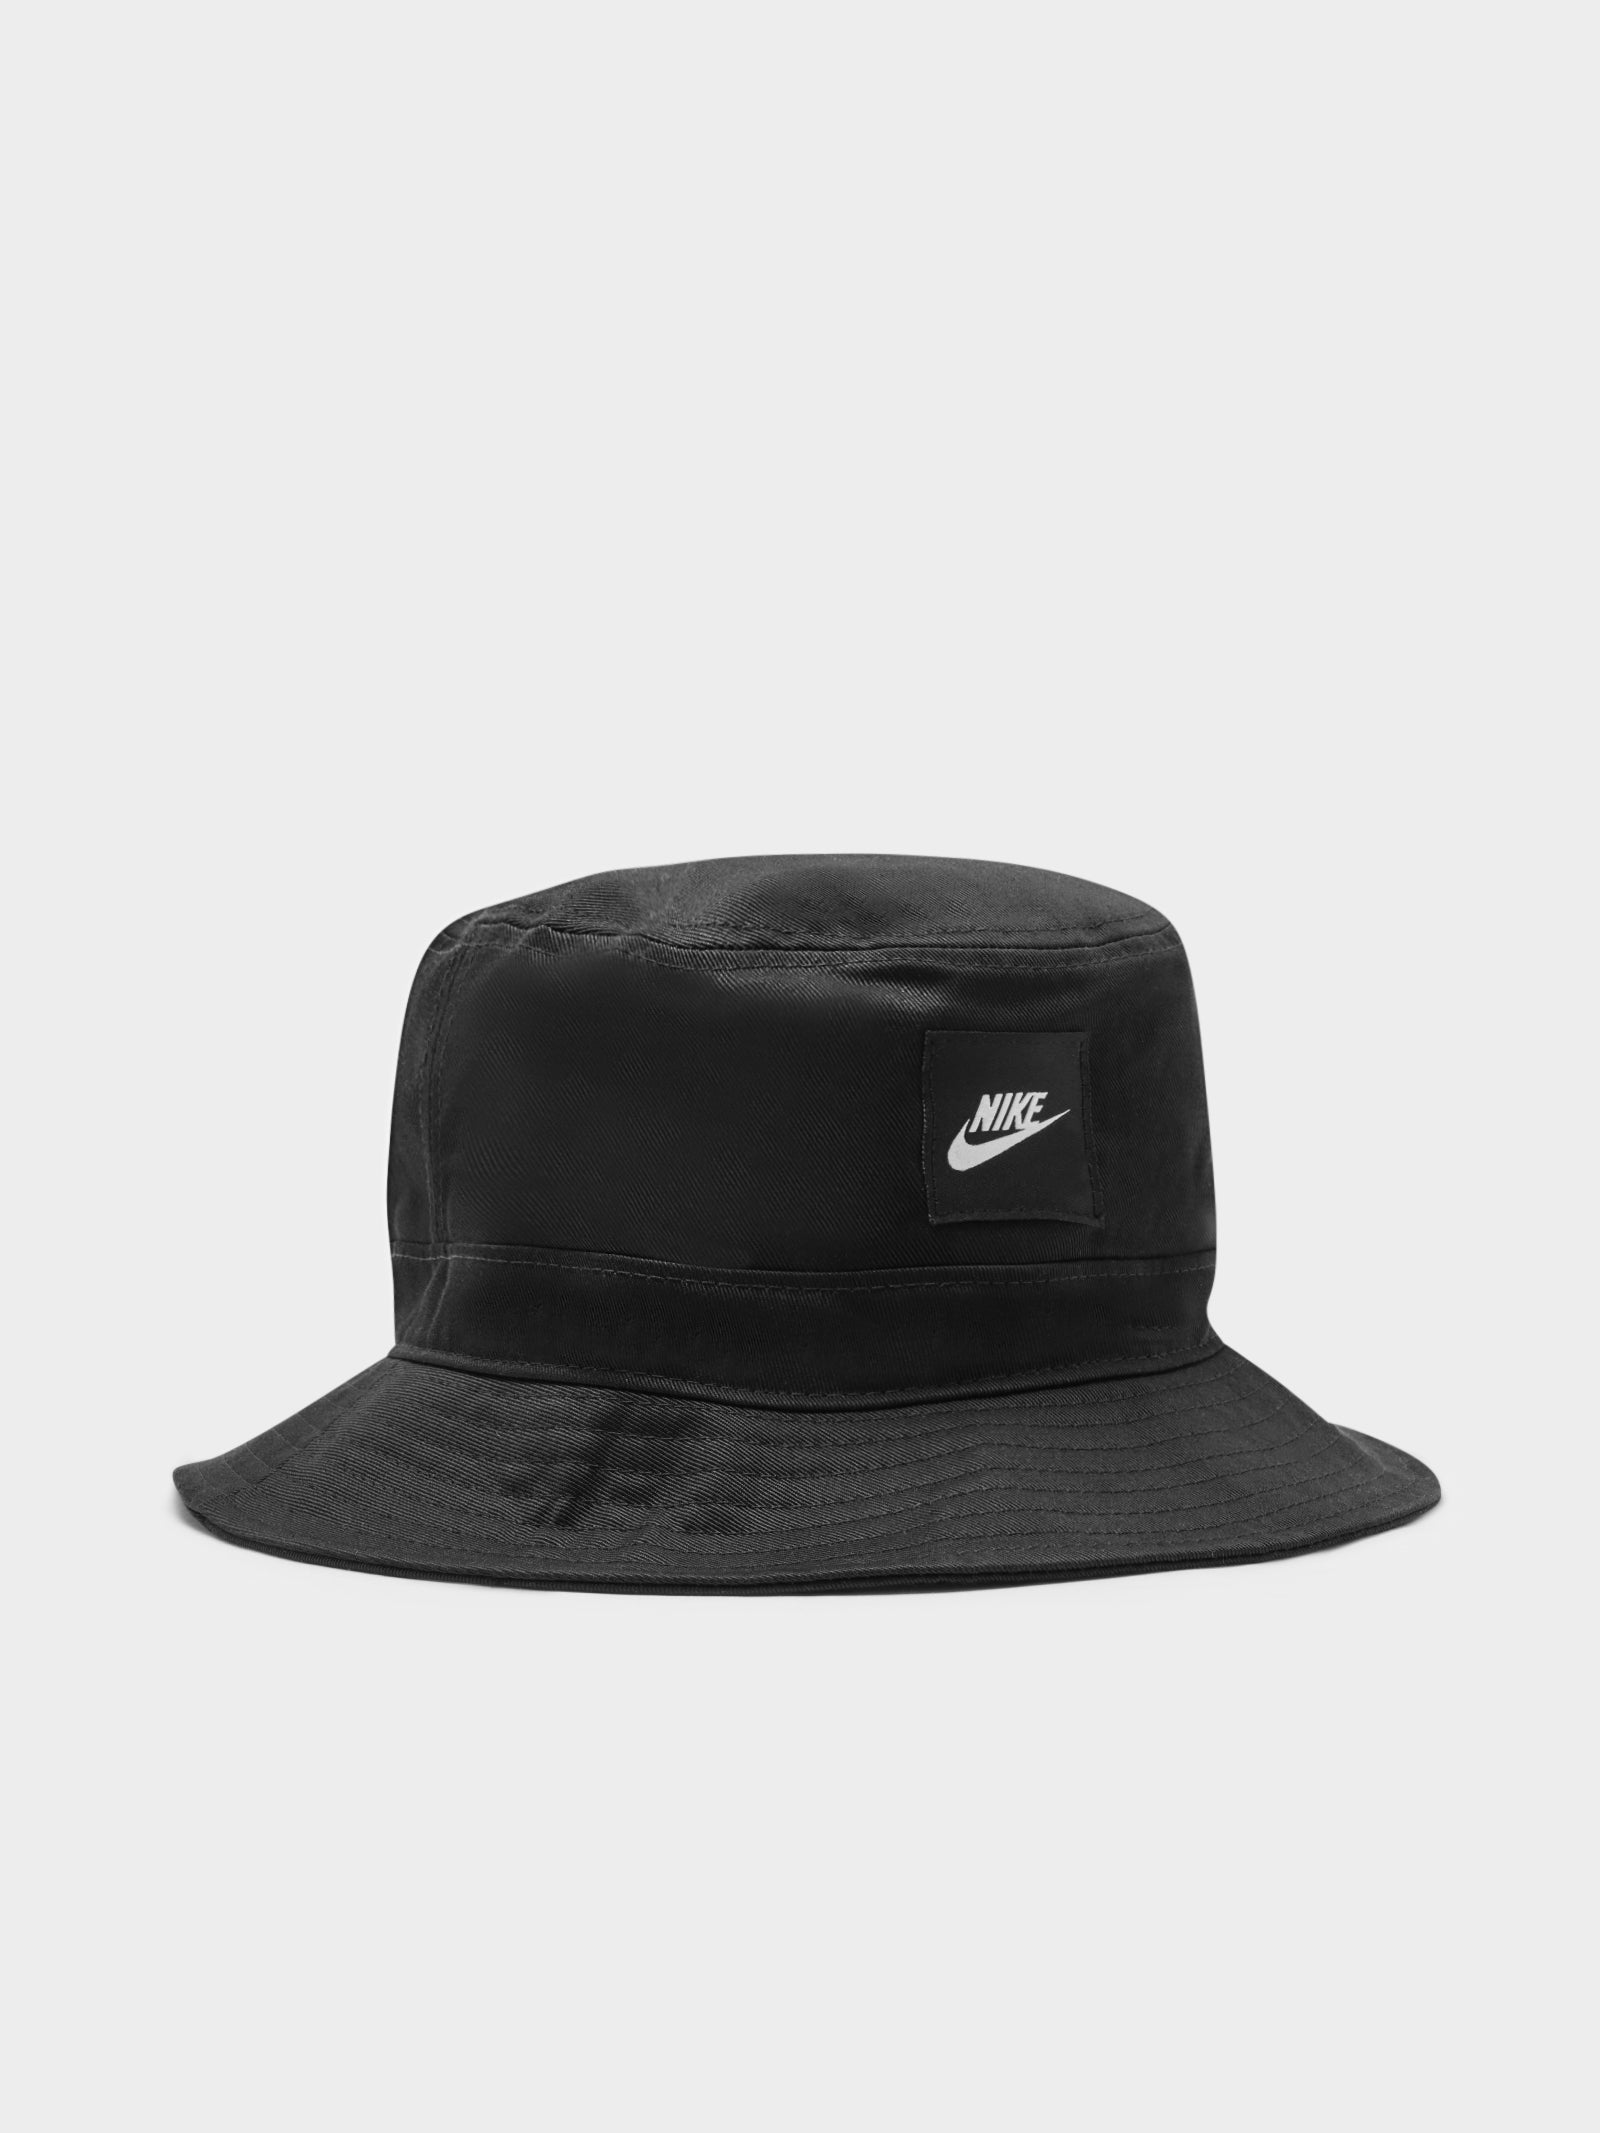 Sportswear Future Core Bucket Hat in Black & White